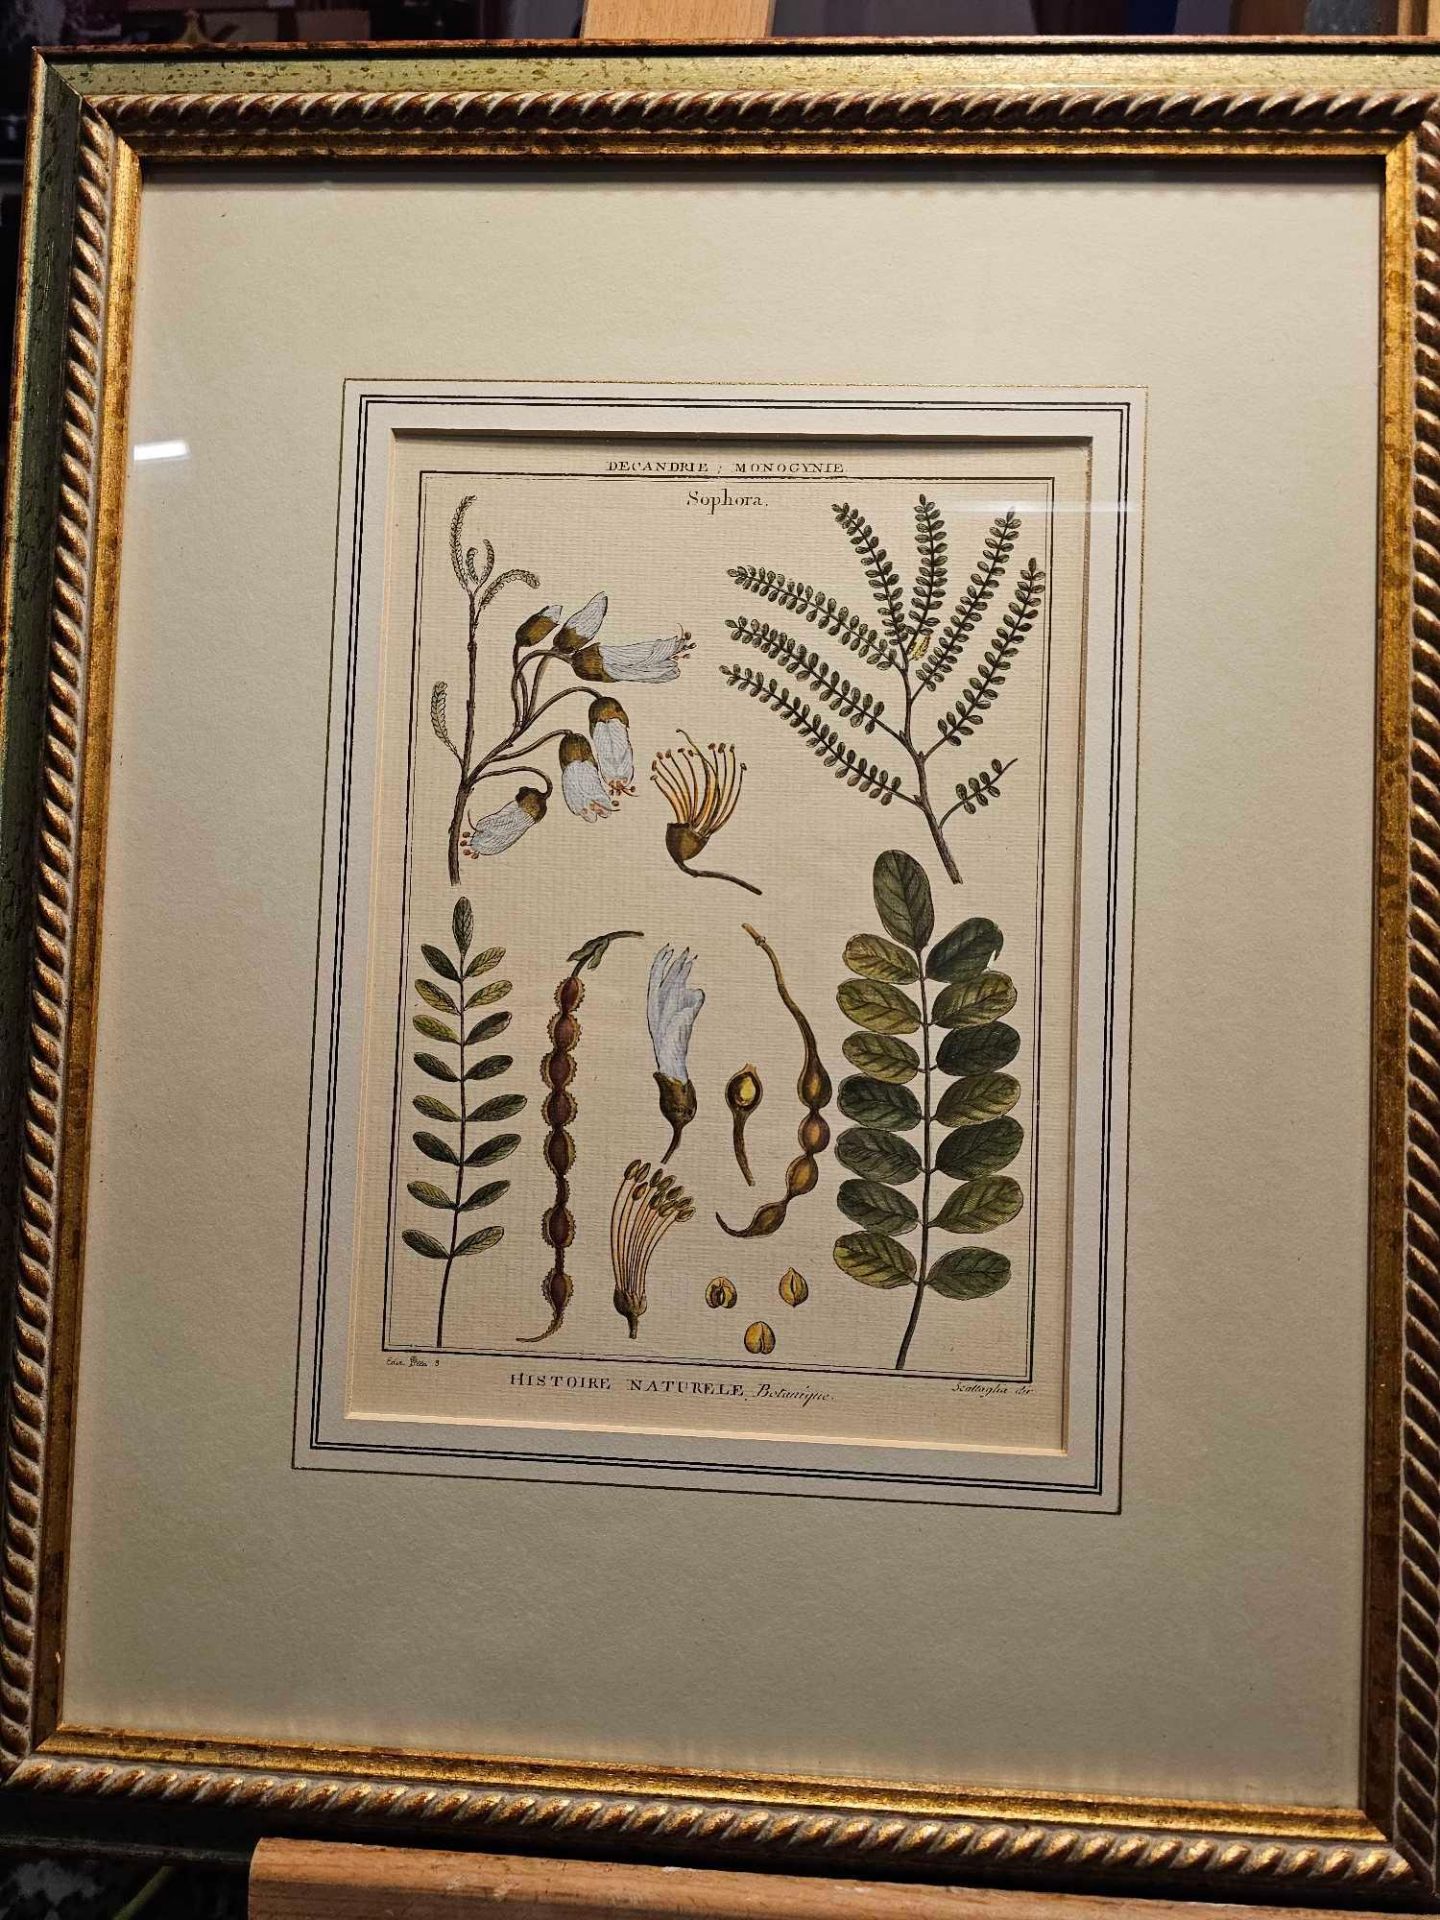 2 x Framed Botanical Prints (1) Decandria Monogyne Sophora. History, Nature, Botany; Scallaglia ( - Image 2 of 4